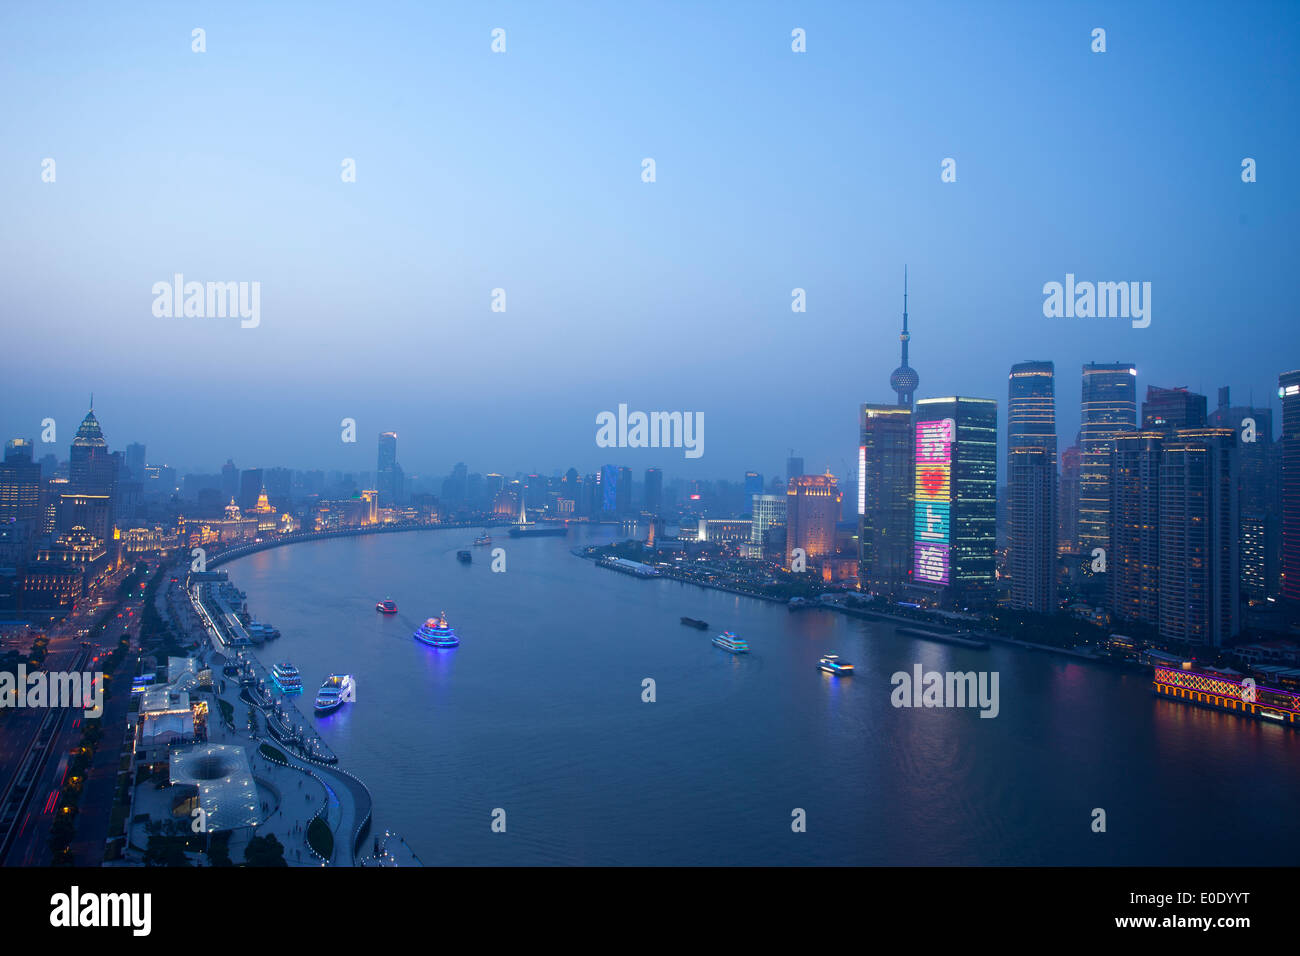 Nachtansicht des shanghai Huangpu river,china.chinese Wort, das bedeutet, dass ich liebe shanghai Stockfoto